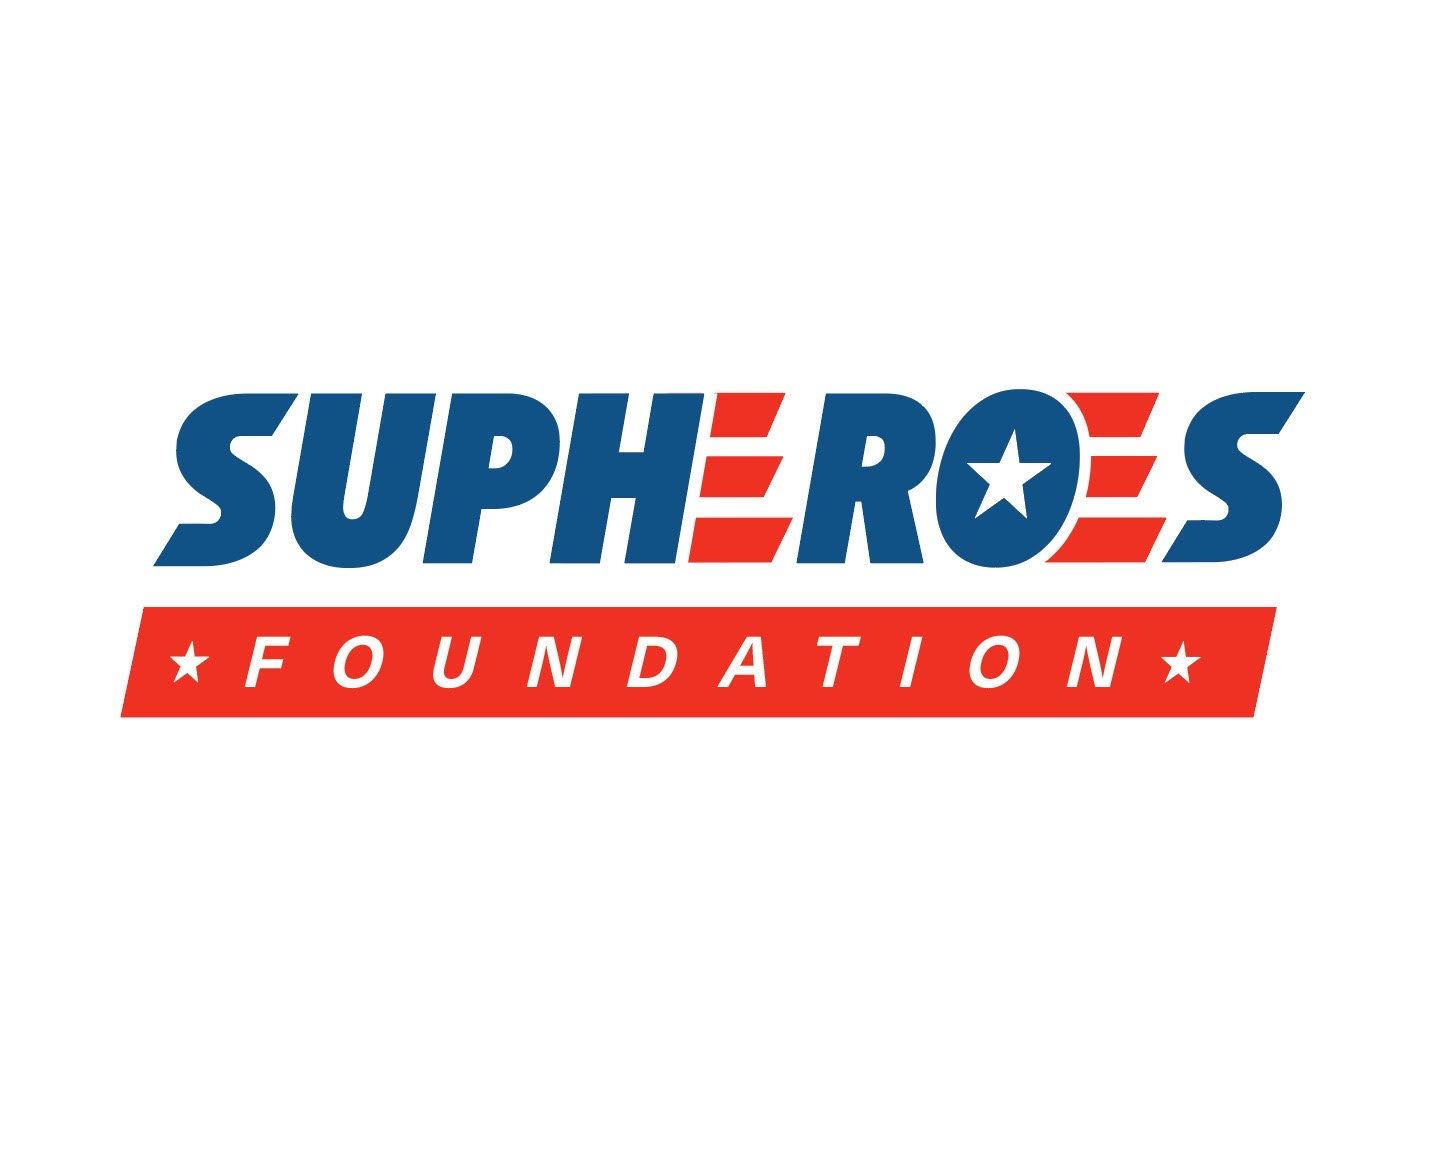 SUPHEROES Foundation logo